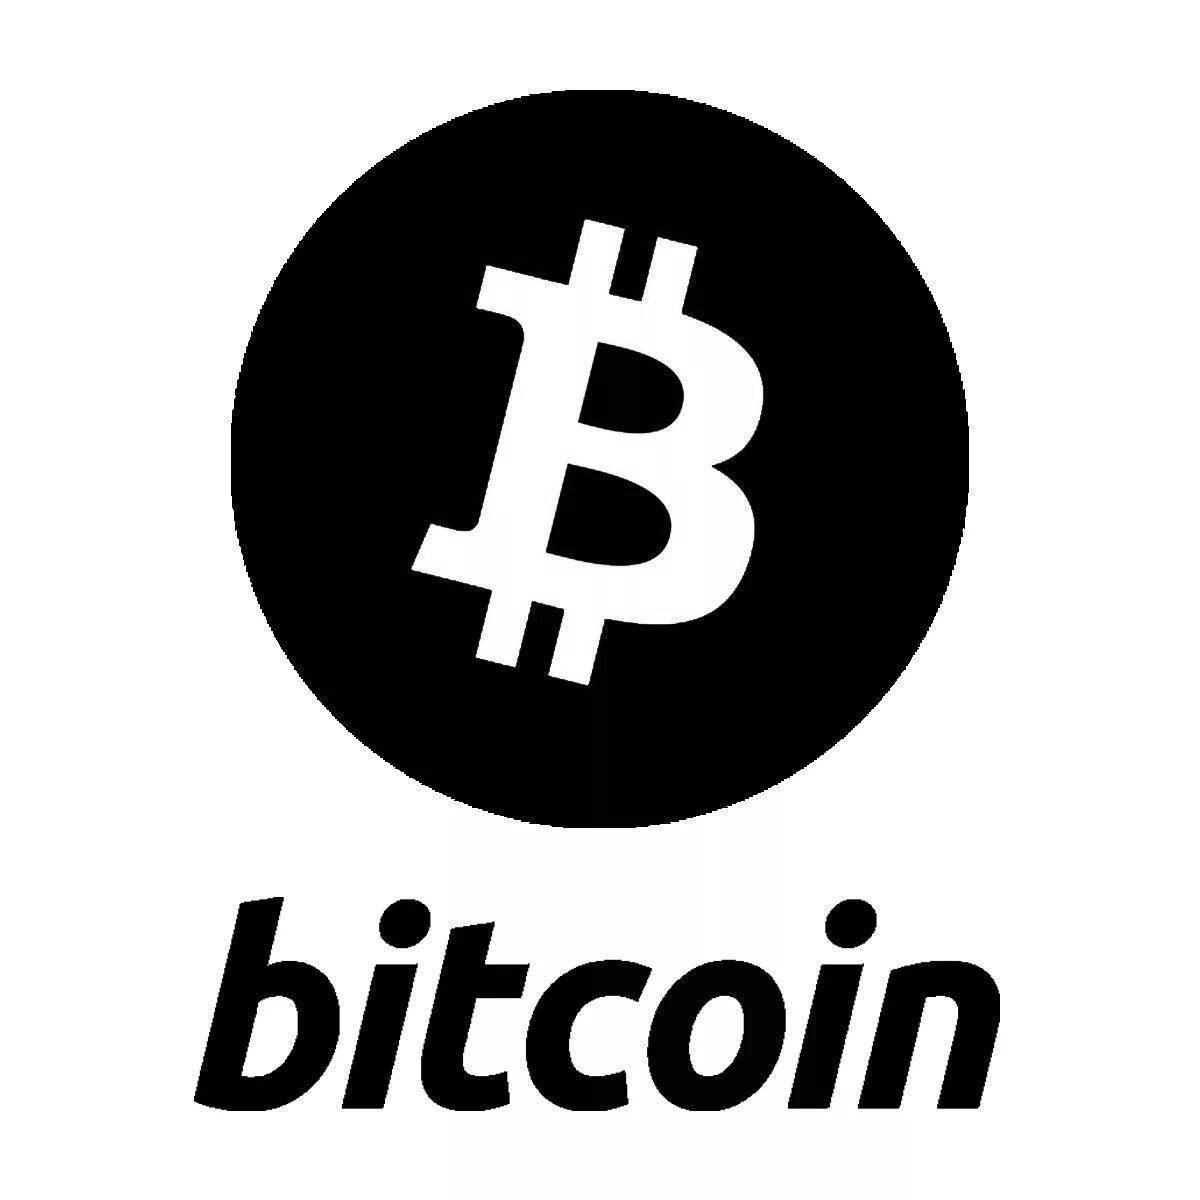 Bitcoin #13